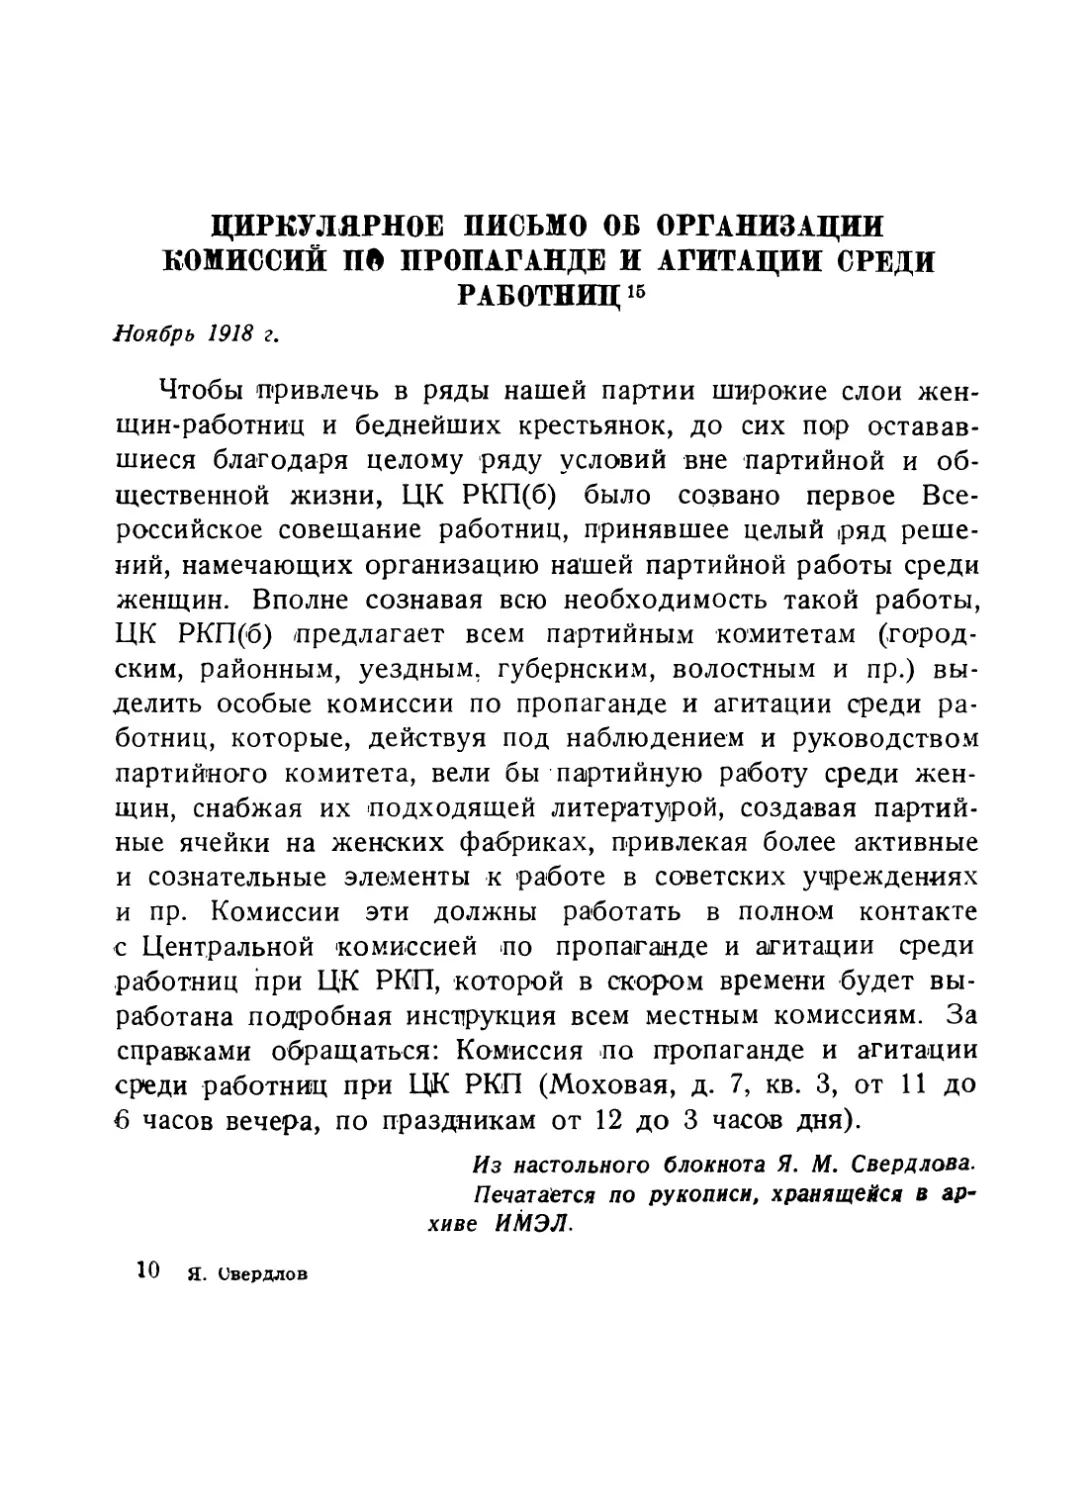 Циркулярное письмо об организации комиссий по пропаганде и агитации среди работниц, ноябрь 1918 г